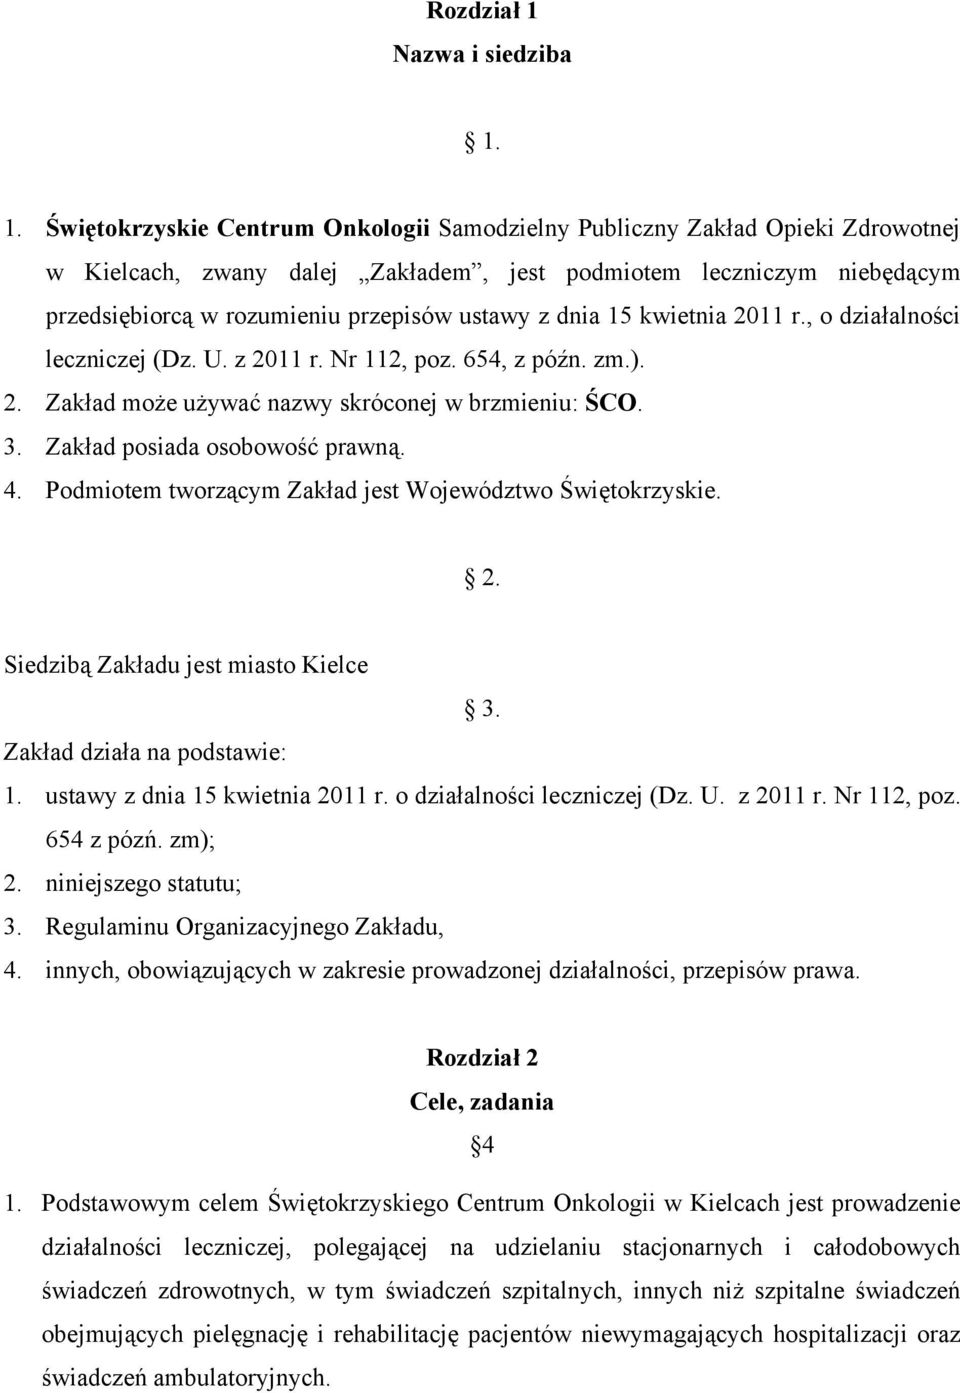 1. Świętokrzyskie Centrum Onkologii Samodzielny Publiczny Zakład Opieki Zdrowotnej w Kielcach, zwany dalej Zakładem, jest podmiotem leczniczym niebędącym przedsiębiorcą w rozumieniu przepisów ustawy